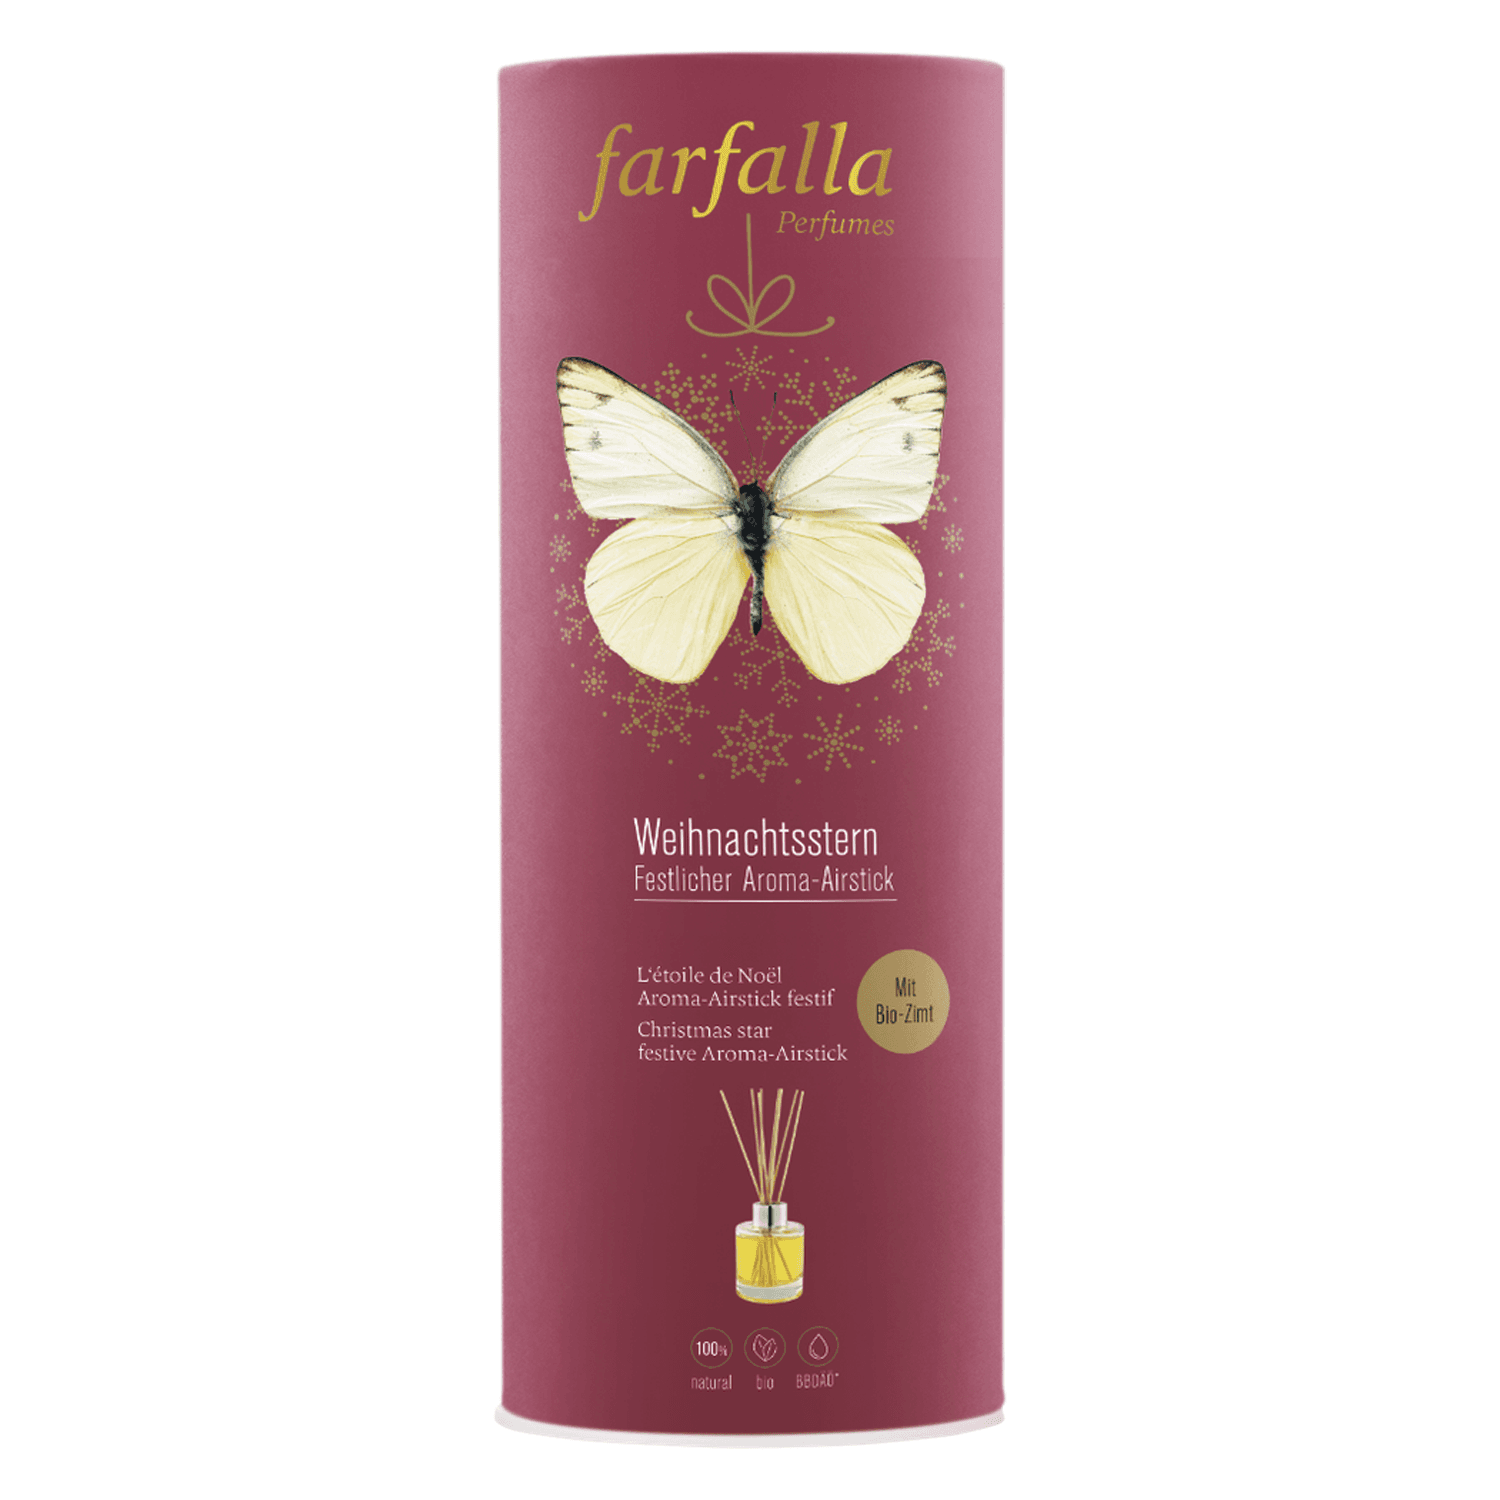 Farfalla Aroma-Airstick - Weihnachtsstern Aroma Airstick